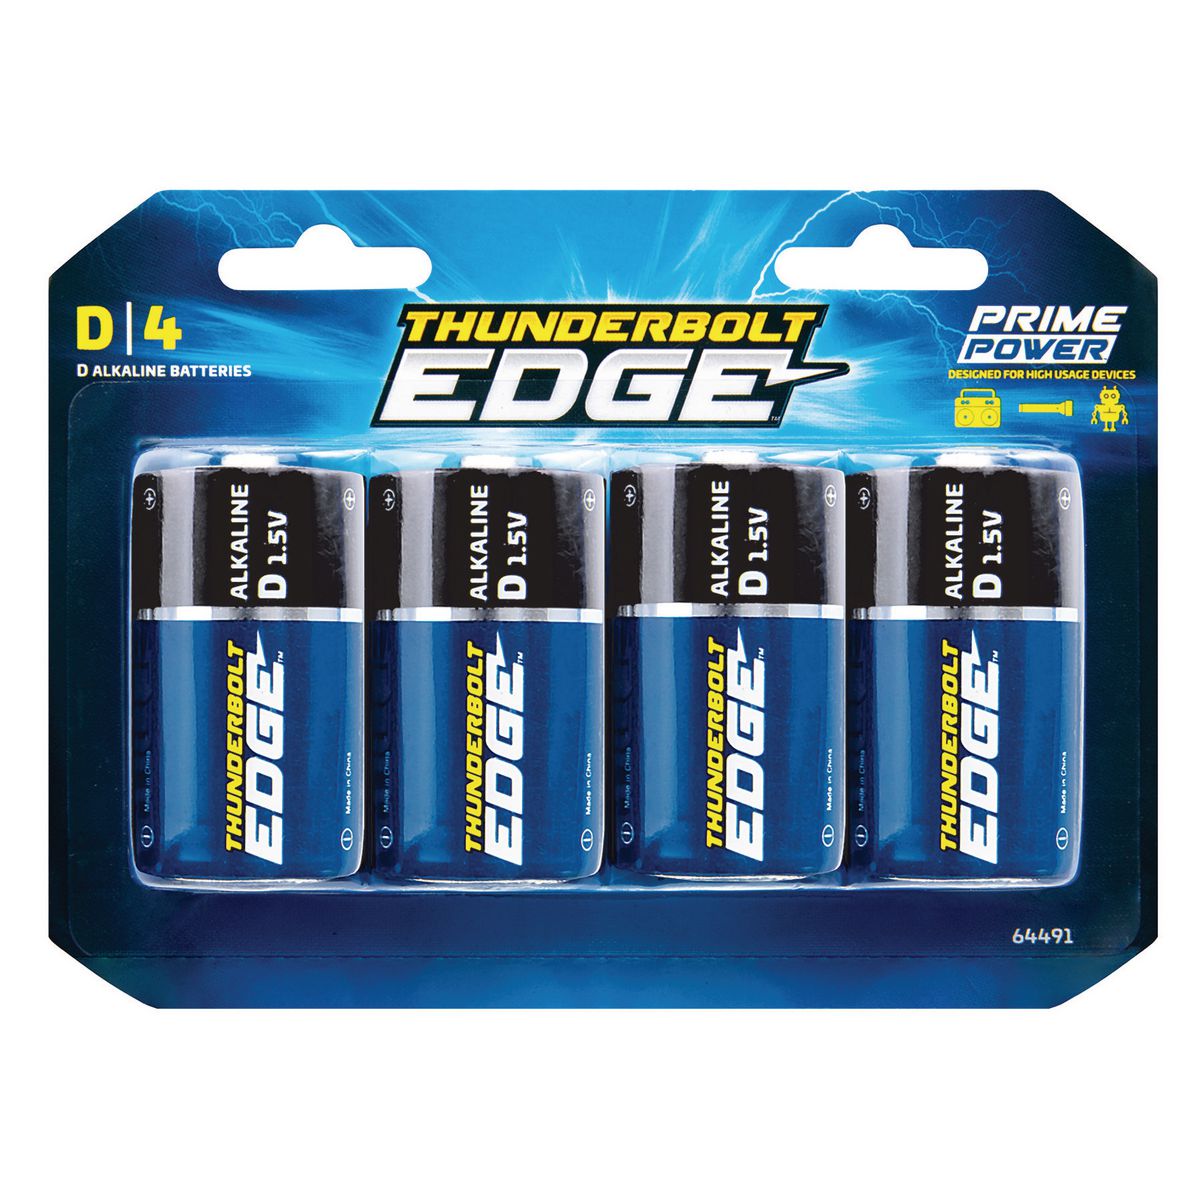 THUNDERBOLT EDGE D Alkaline Batteries 4 Pk. - Item 64491